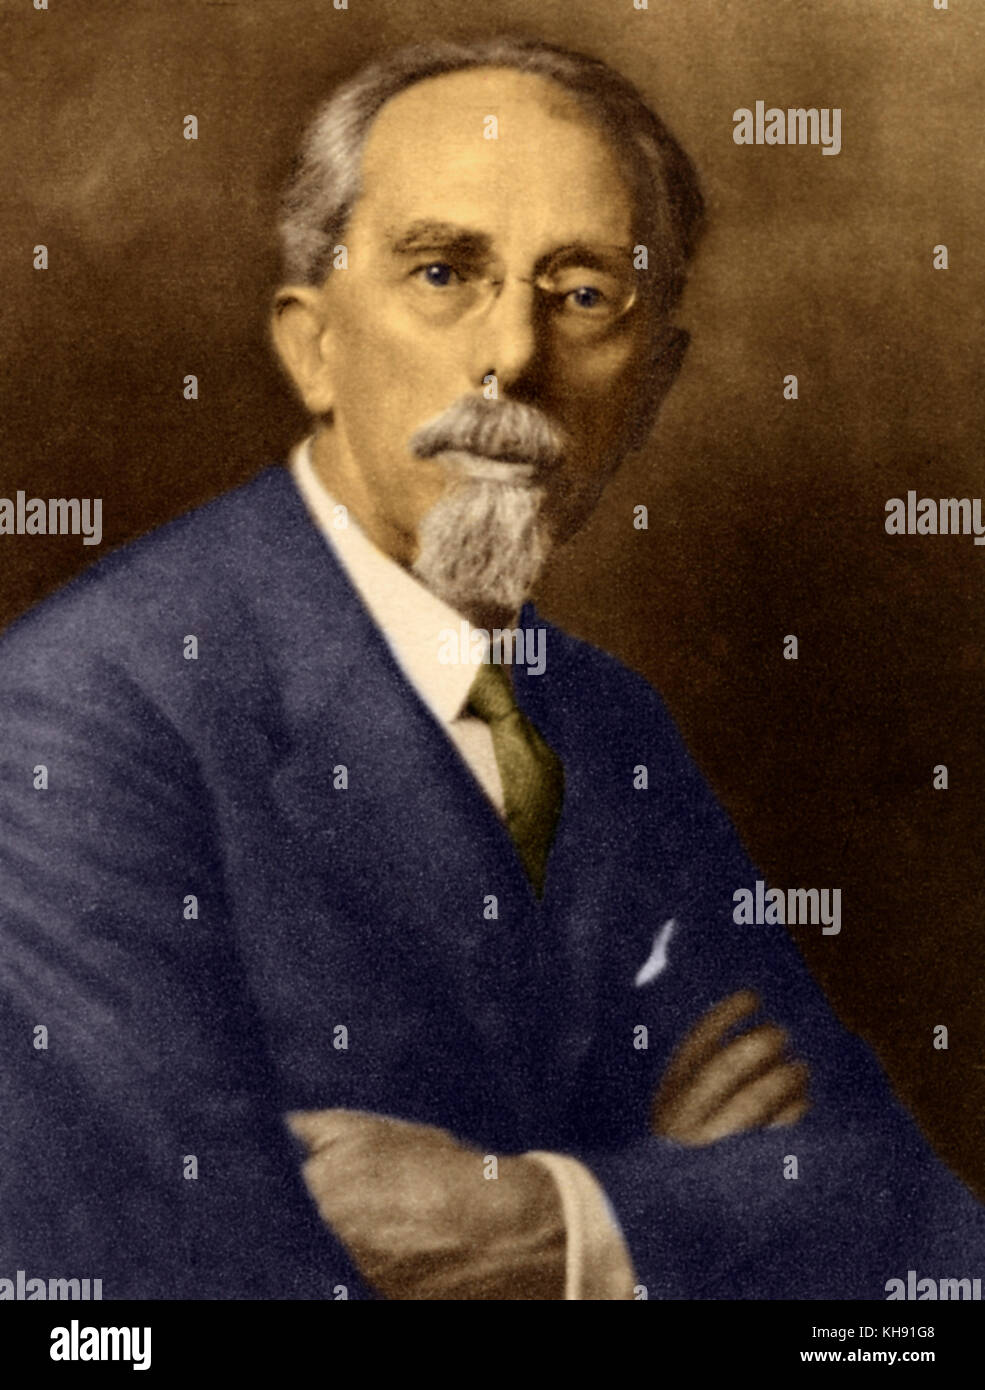 Franz Schalk - portrait. Austrian conductor. 1863-1931 Stock Photo